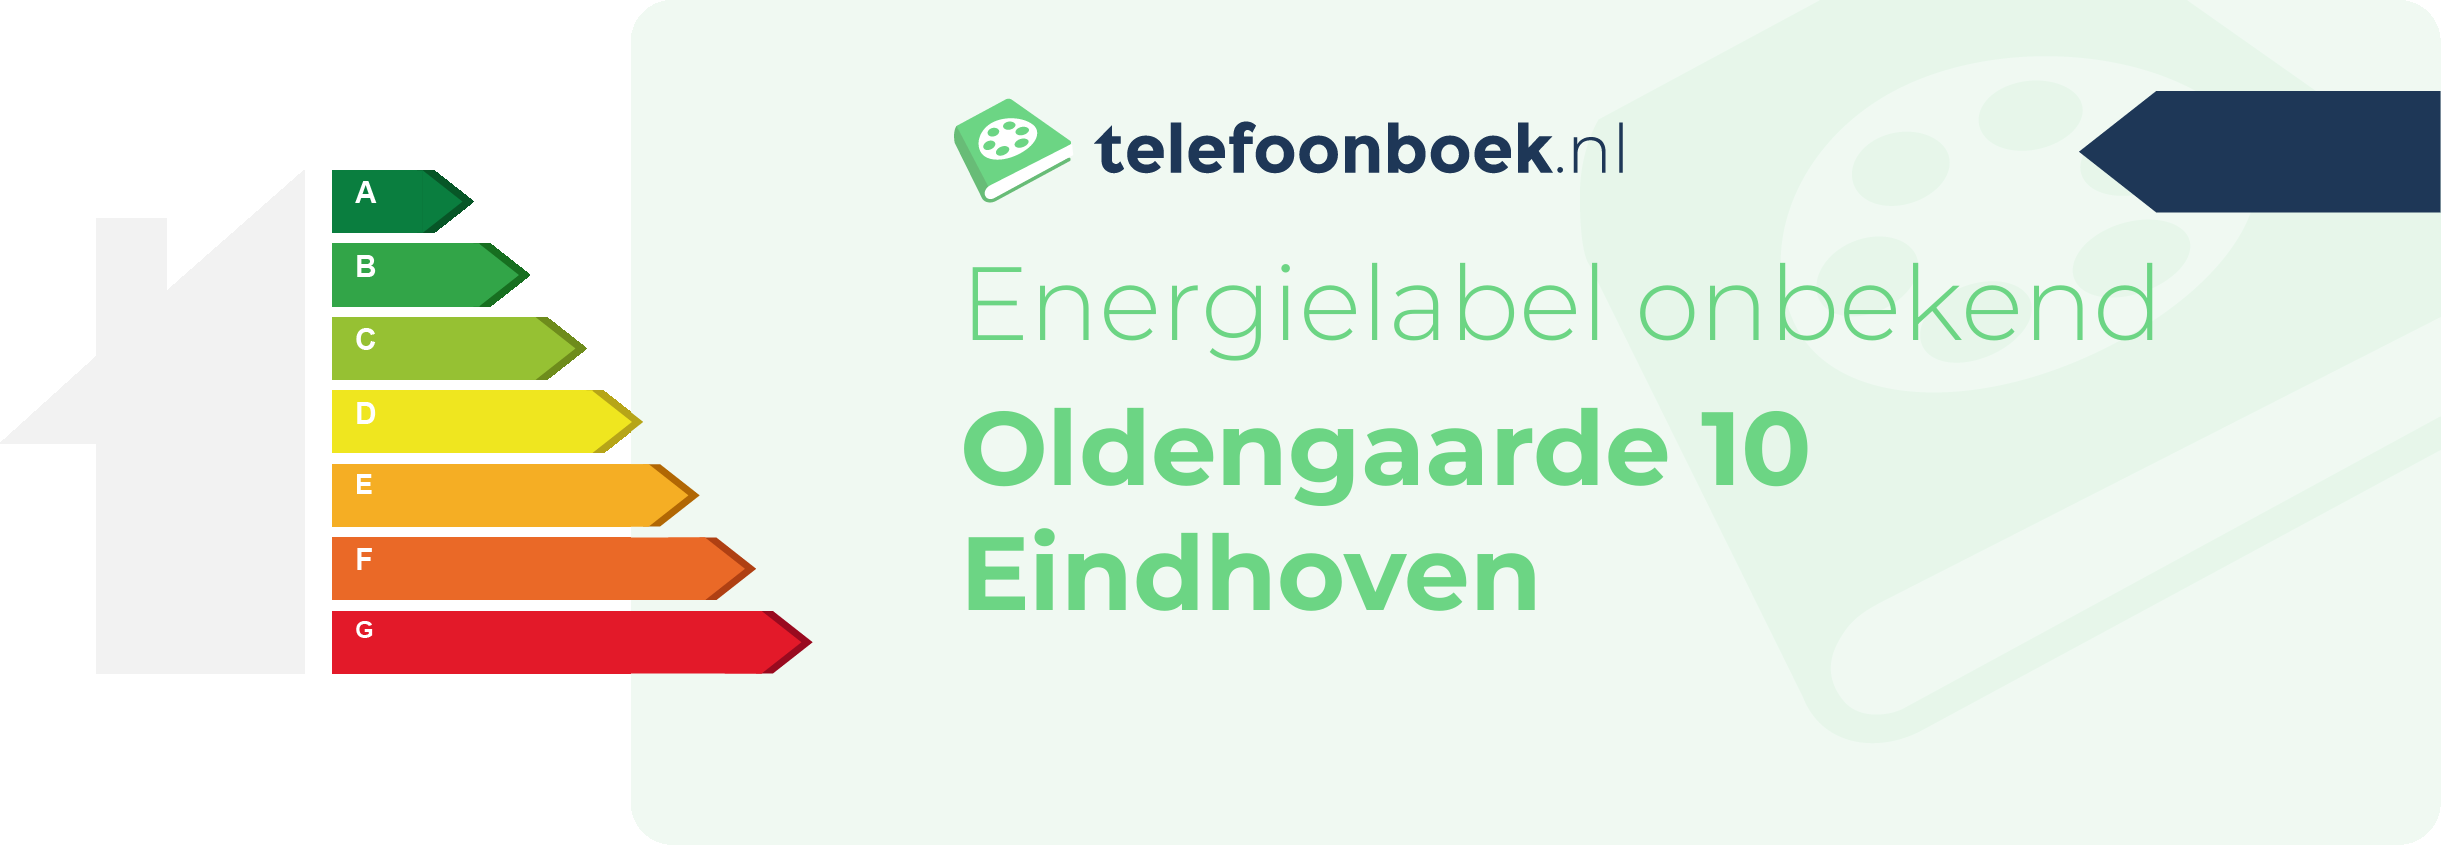 Energielabel Oldengaarde 10 Eindhoven